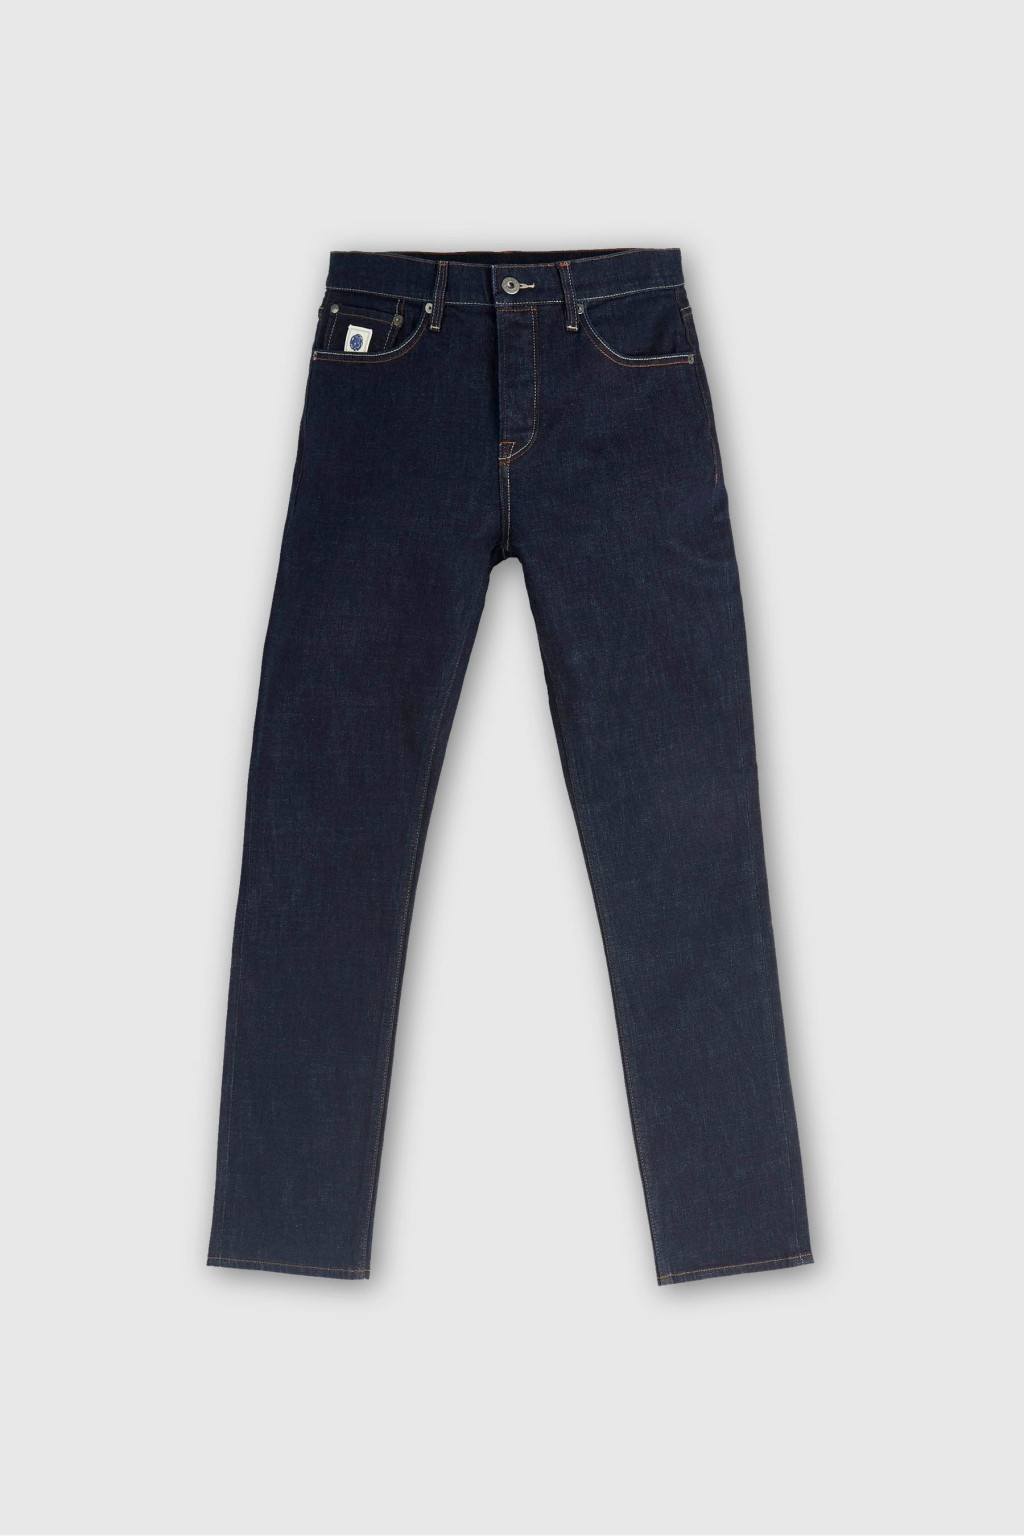 spodnie jeans slim fit erwood